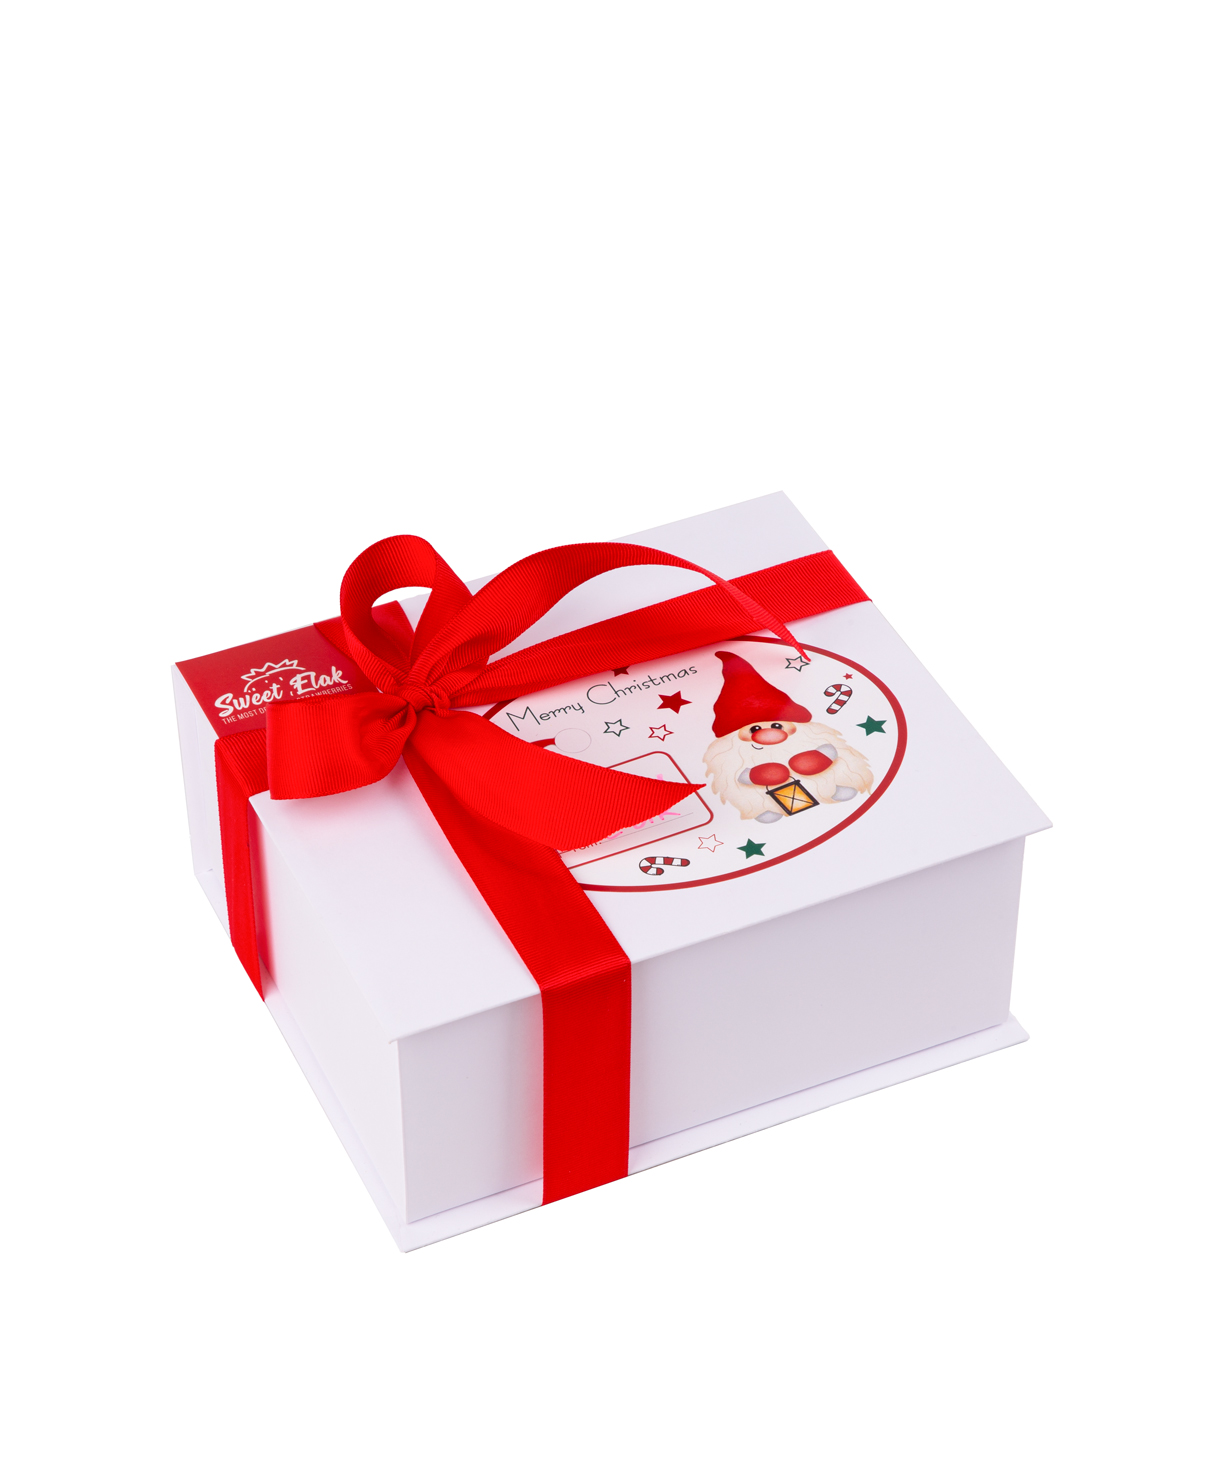 Клубника в шоколаде `Sweet Elak` Secret Santa